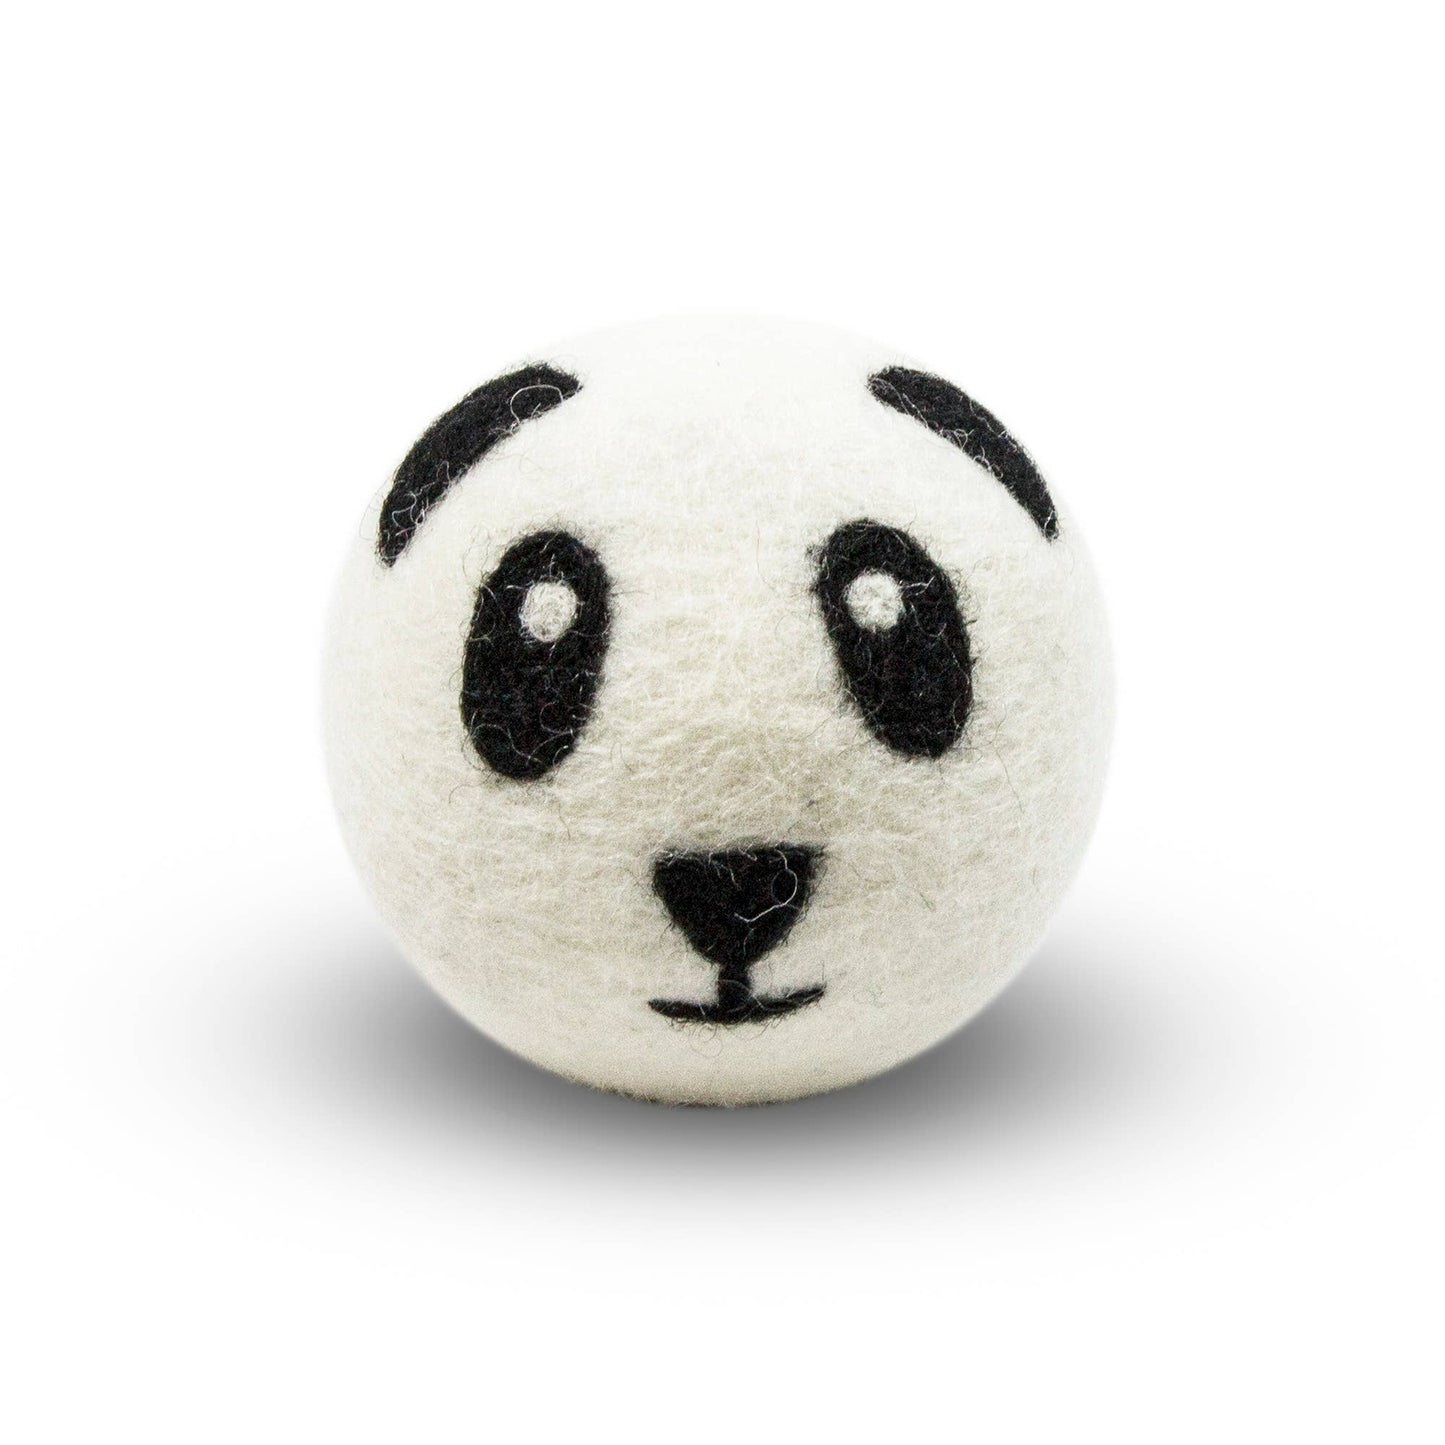 Sheep's Wool Eco Dryer Balls